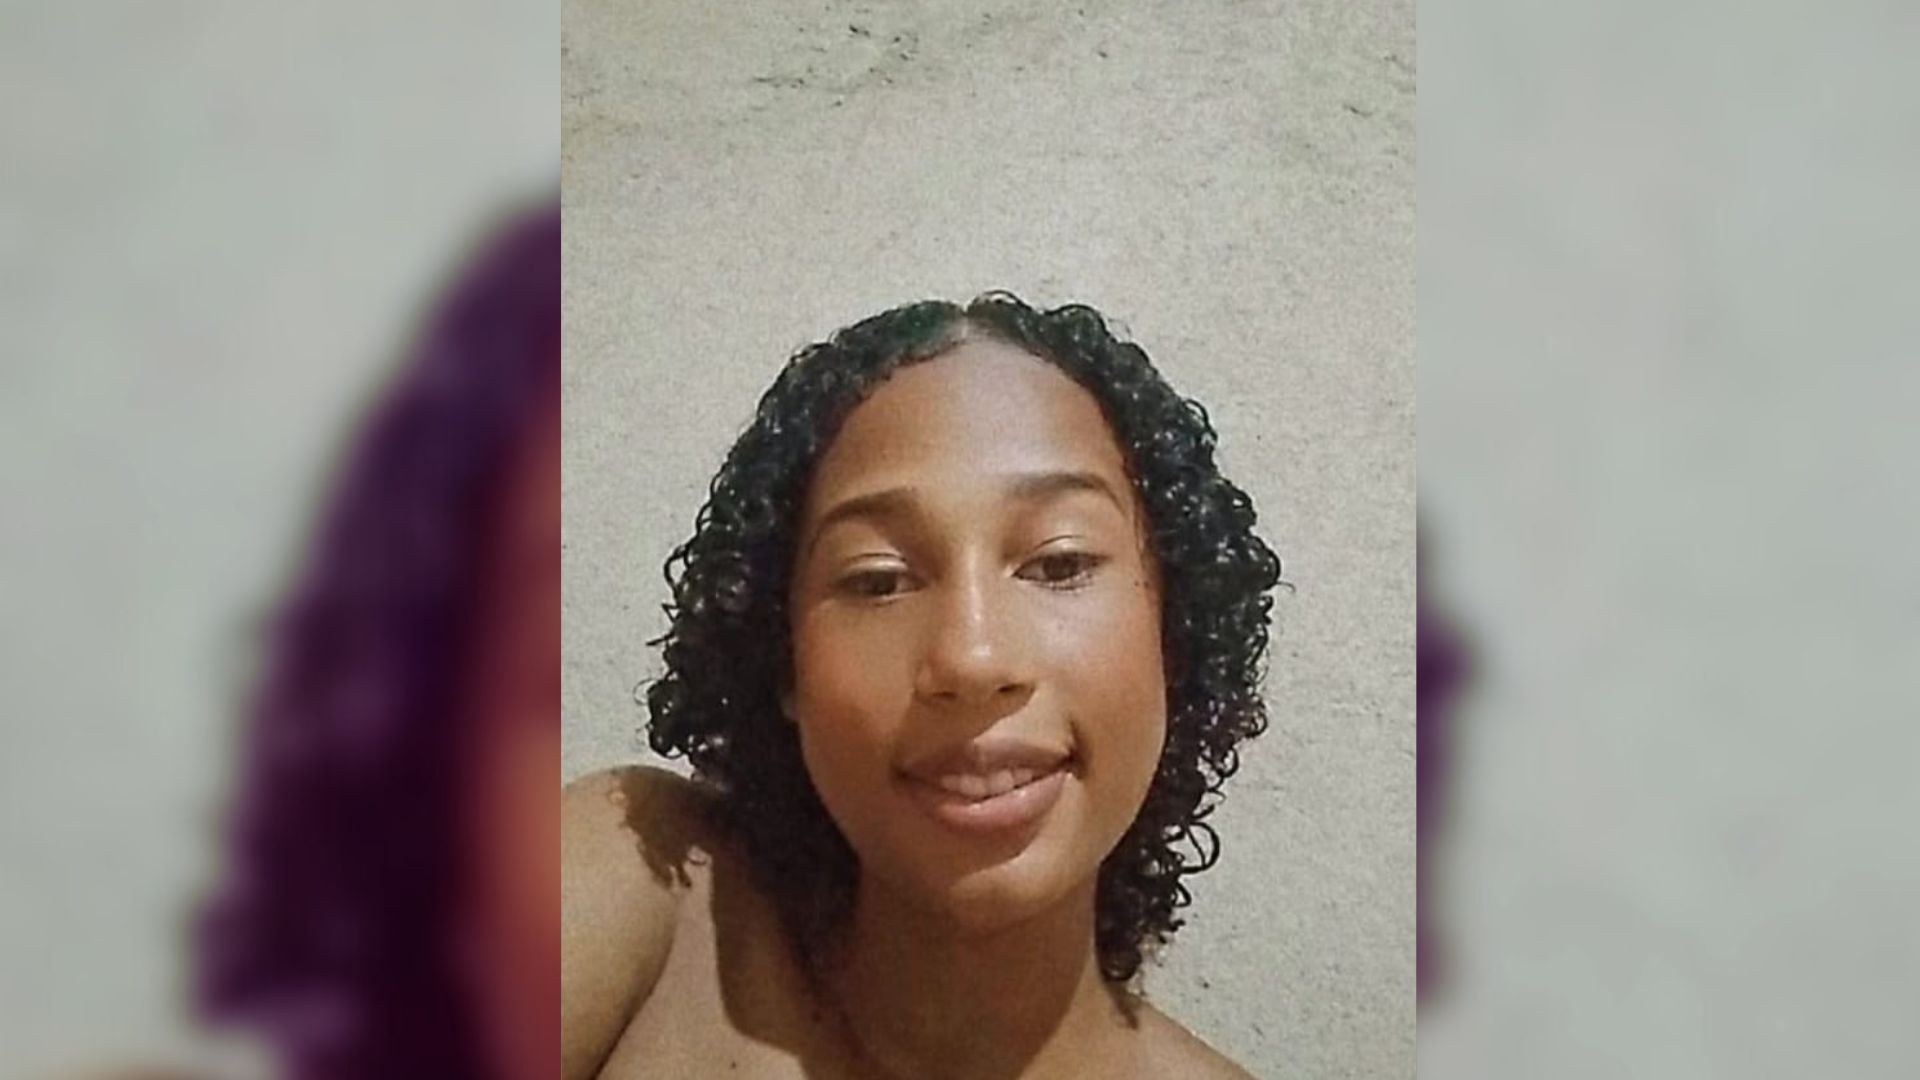 Samanta Teixeira de Oliveira Teodoro, de 14 anos, está desaparecida desde o dia 22 de março, quando saiu da casa dos avós; apesar das buscas, a menina não foi localizada